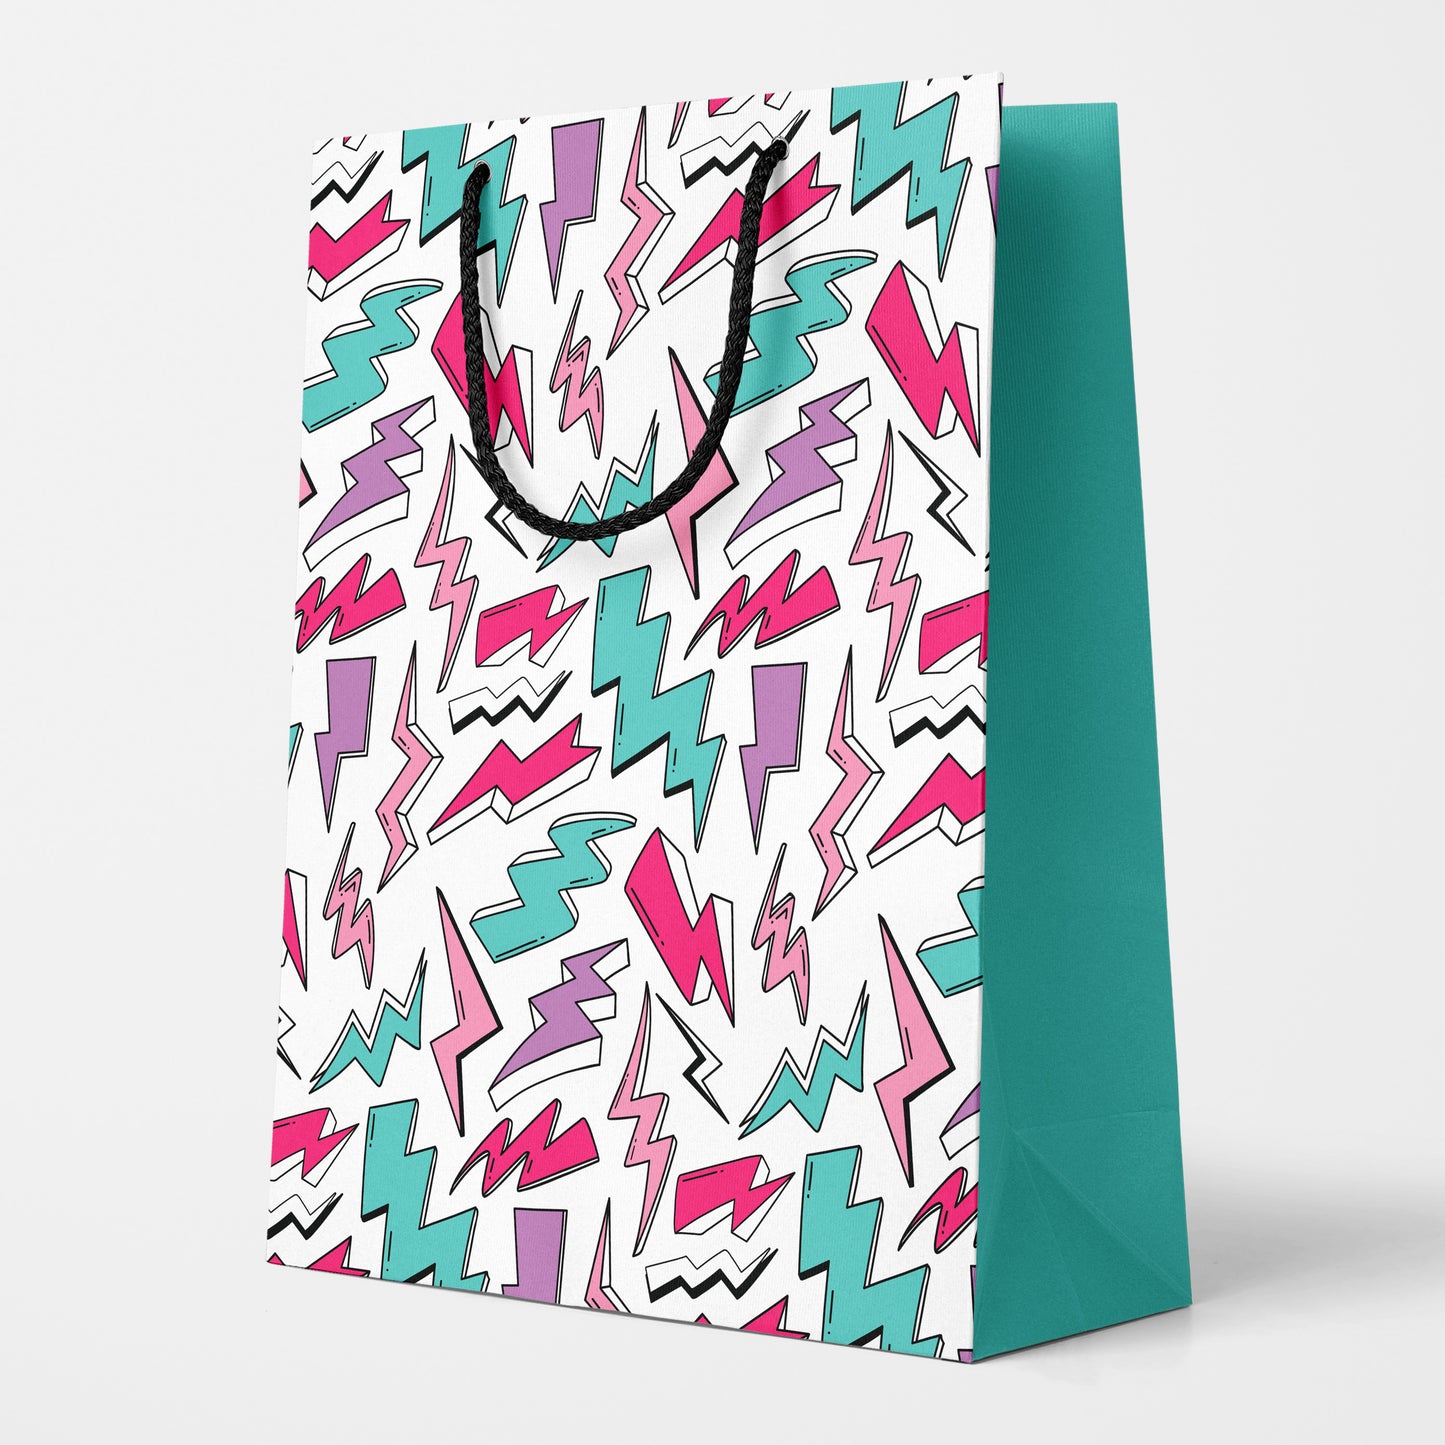 Girl Power Gift Bag